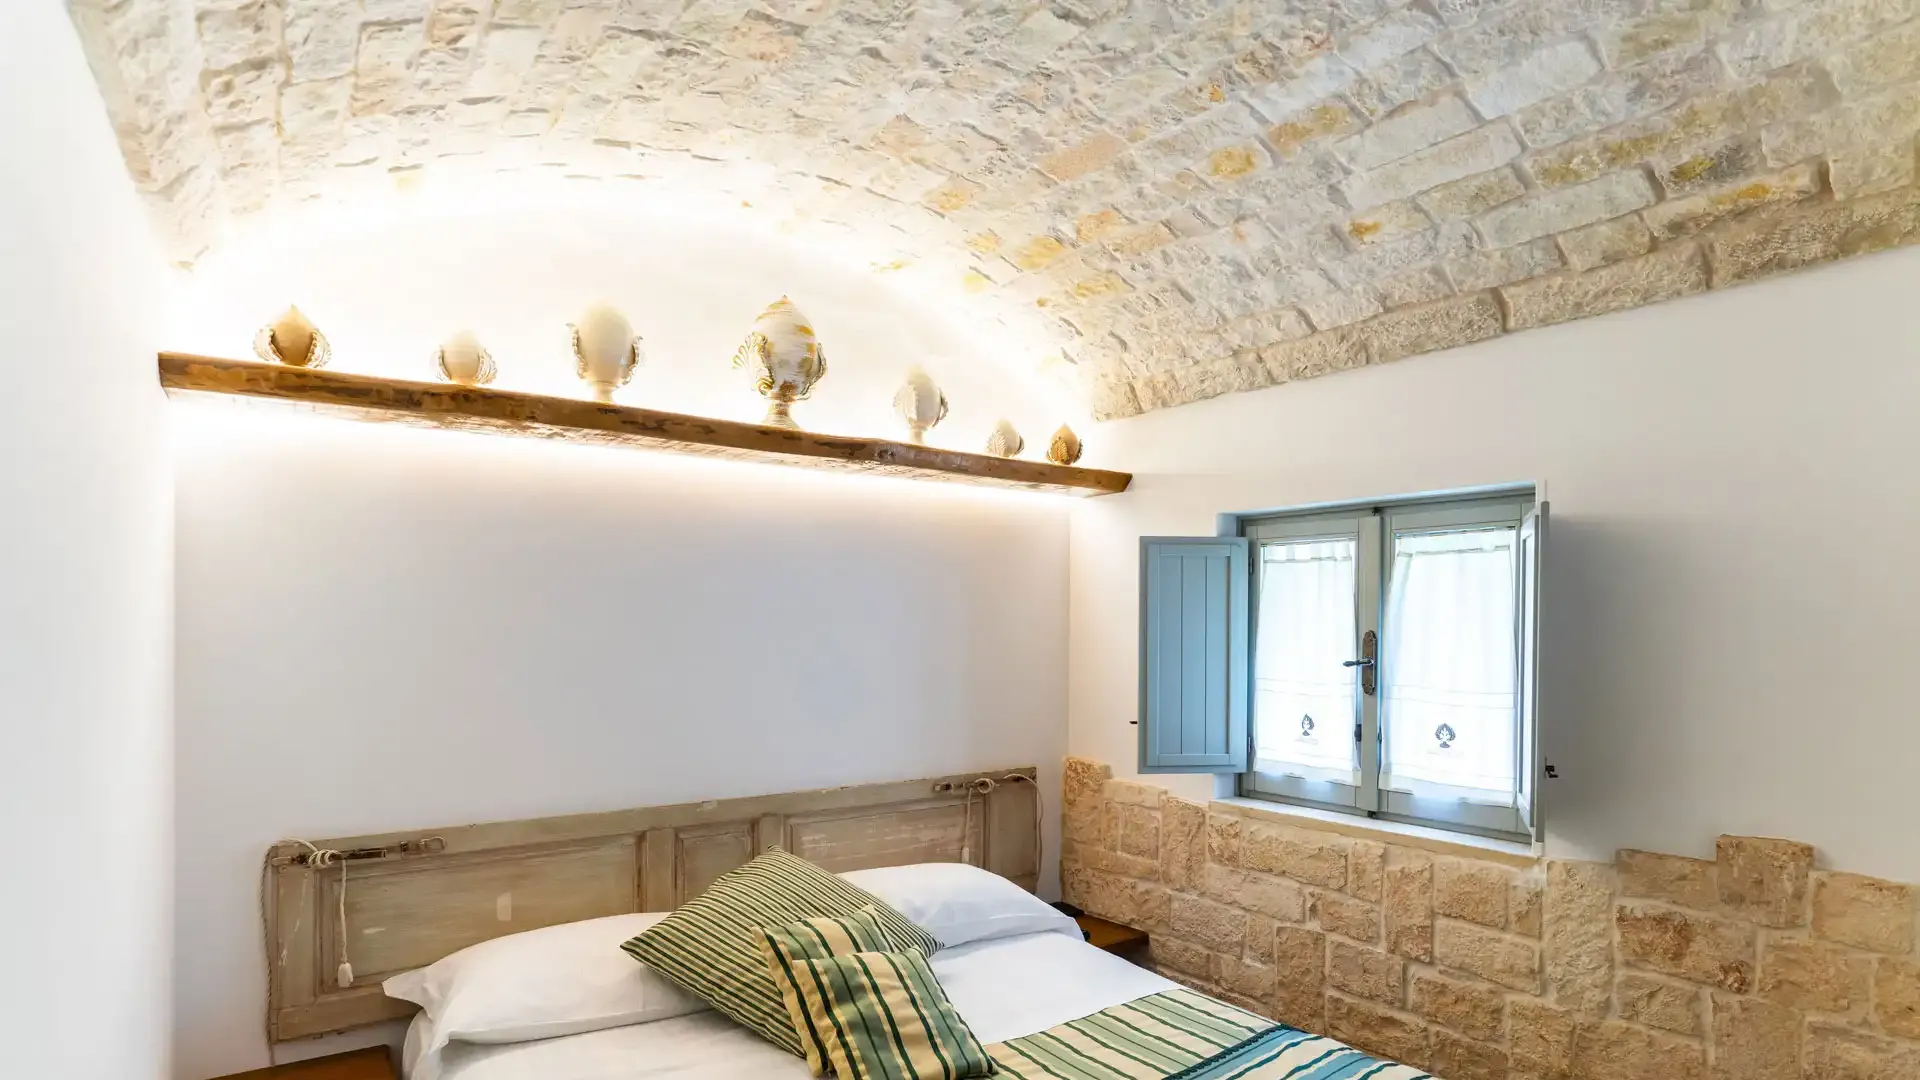 Chambre confortable avec plafond en pierre et décorations rustiques.